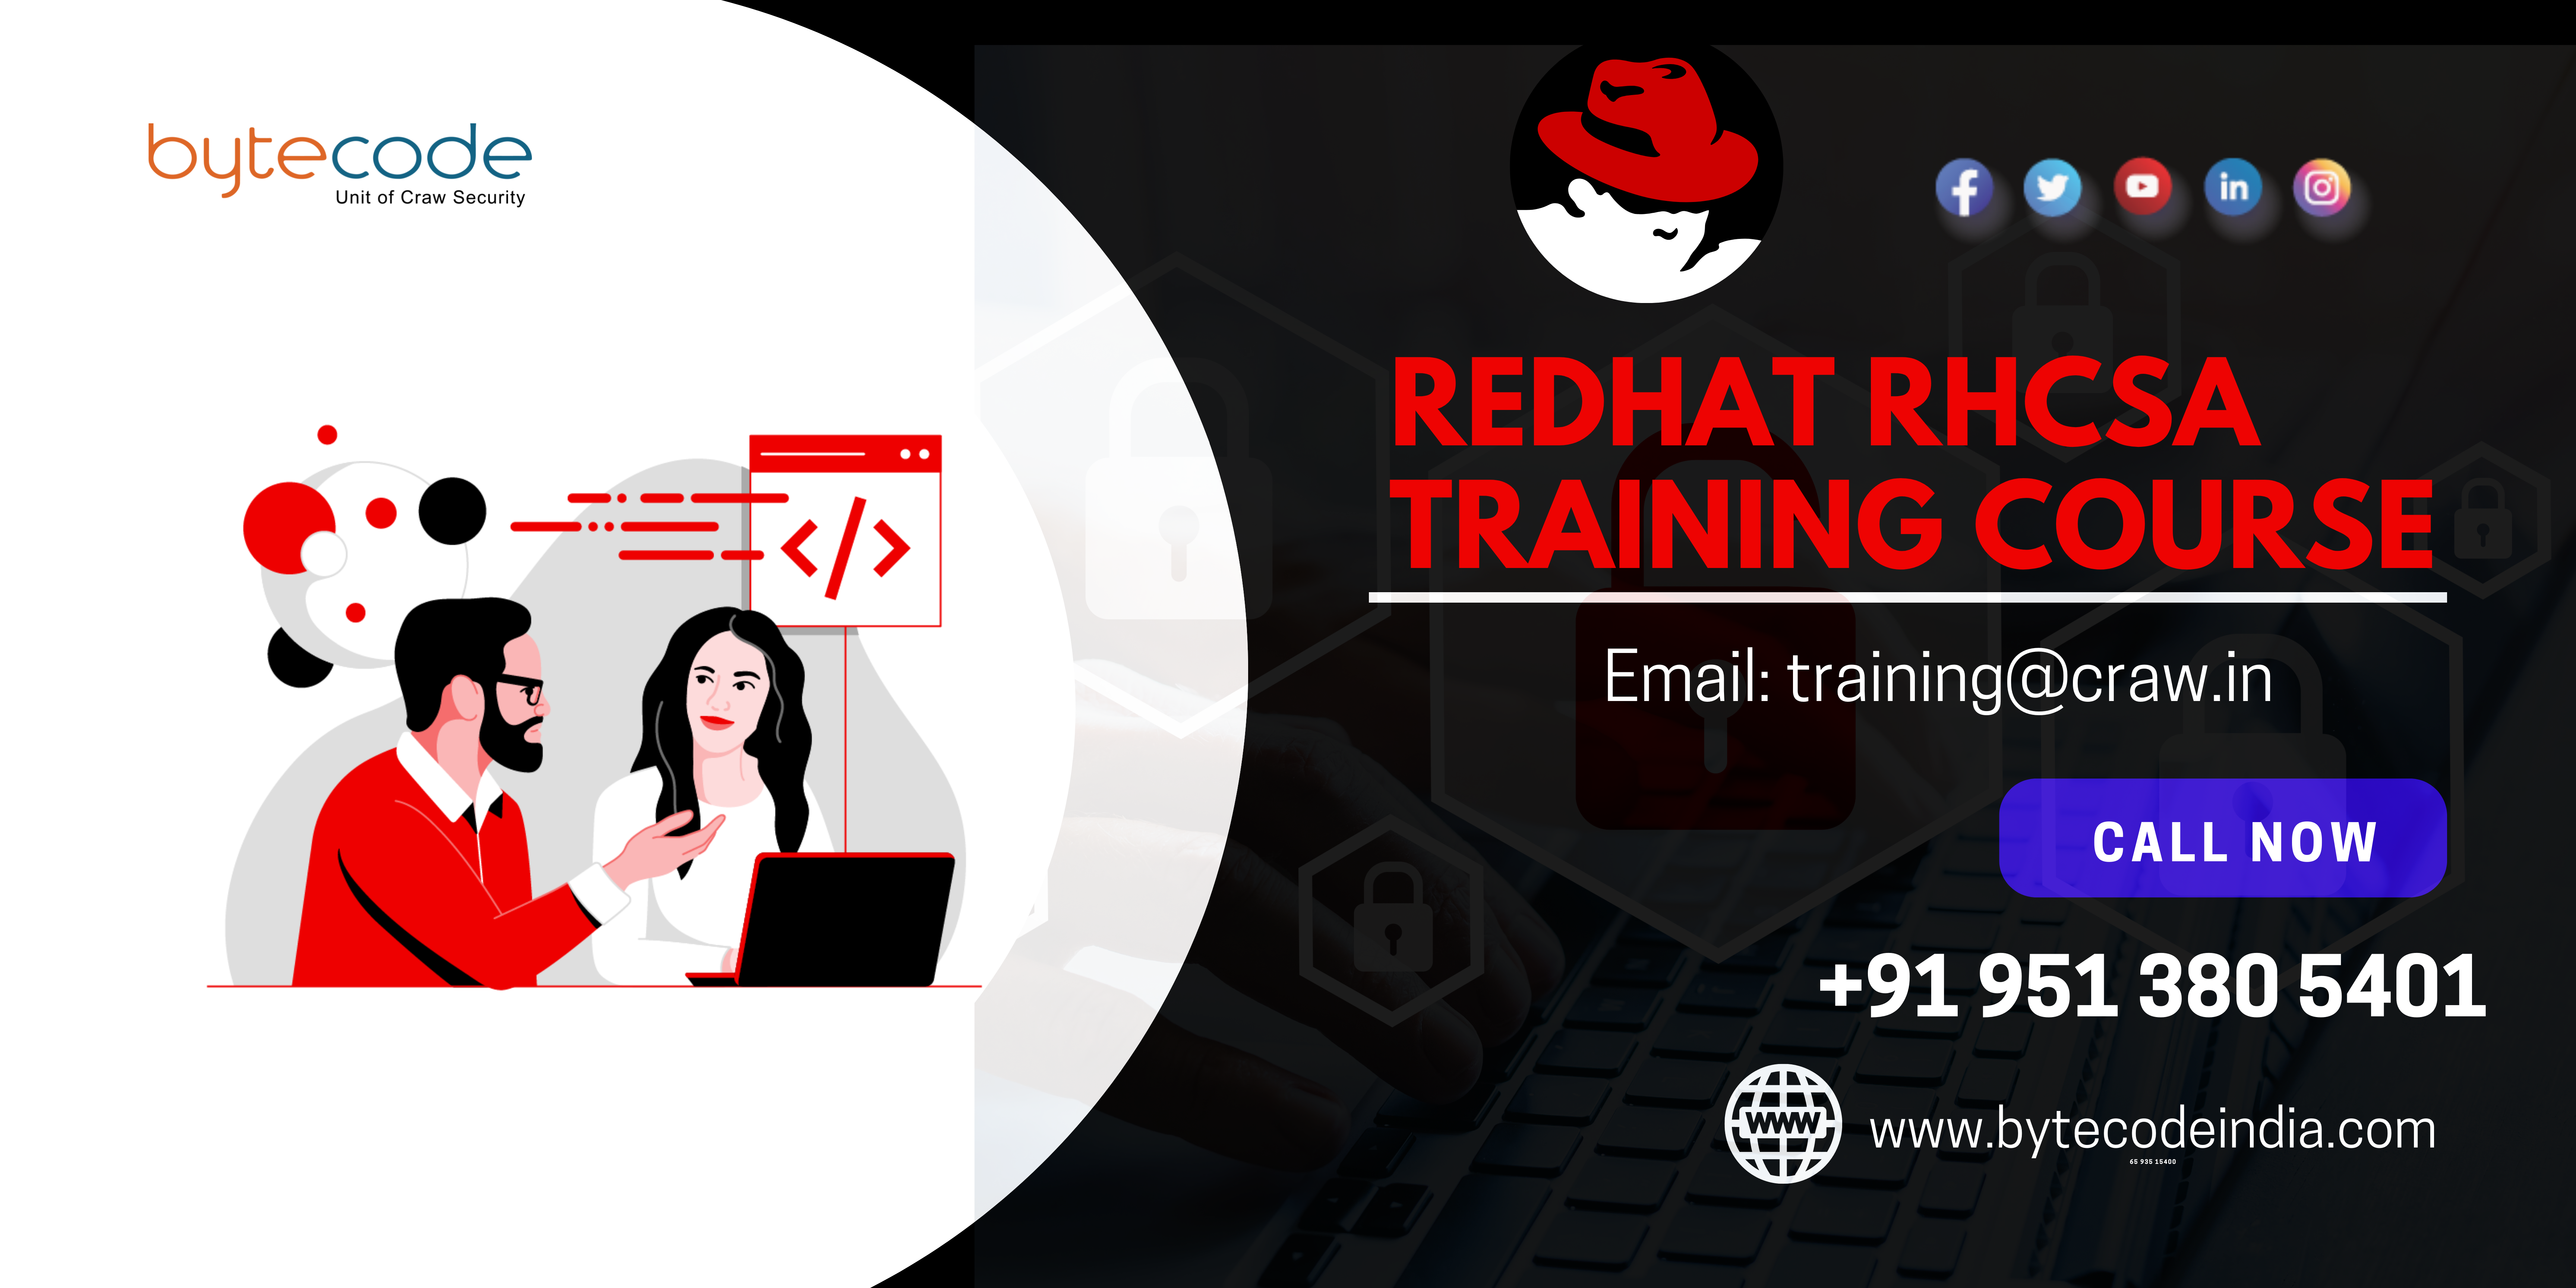 Best RedHat RHCSA Training Course in Delhi